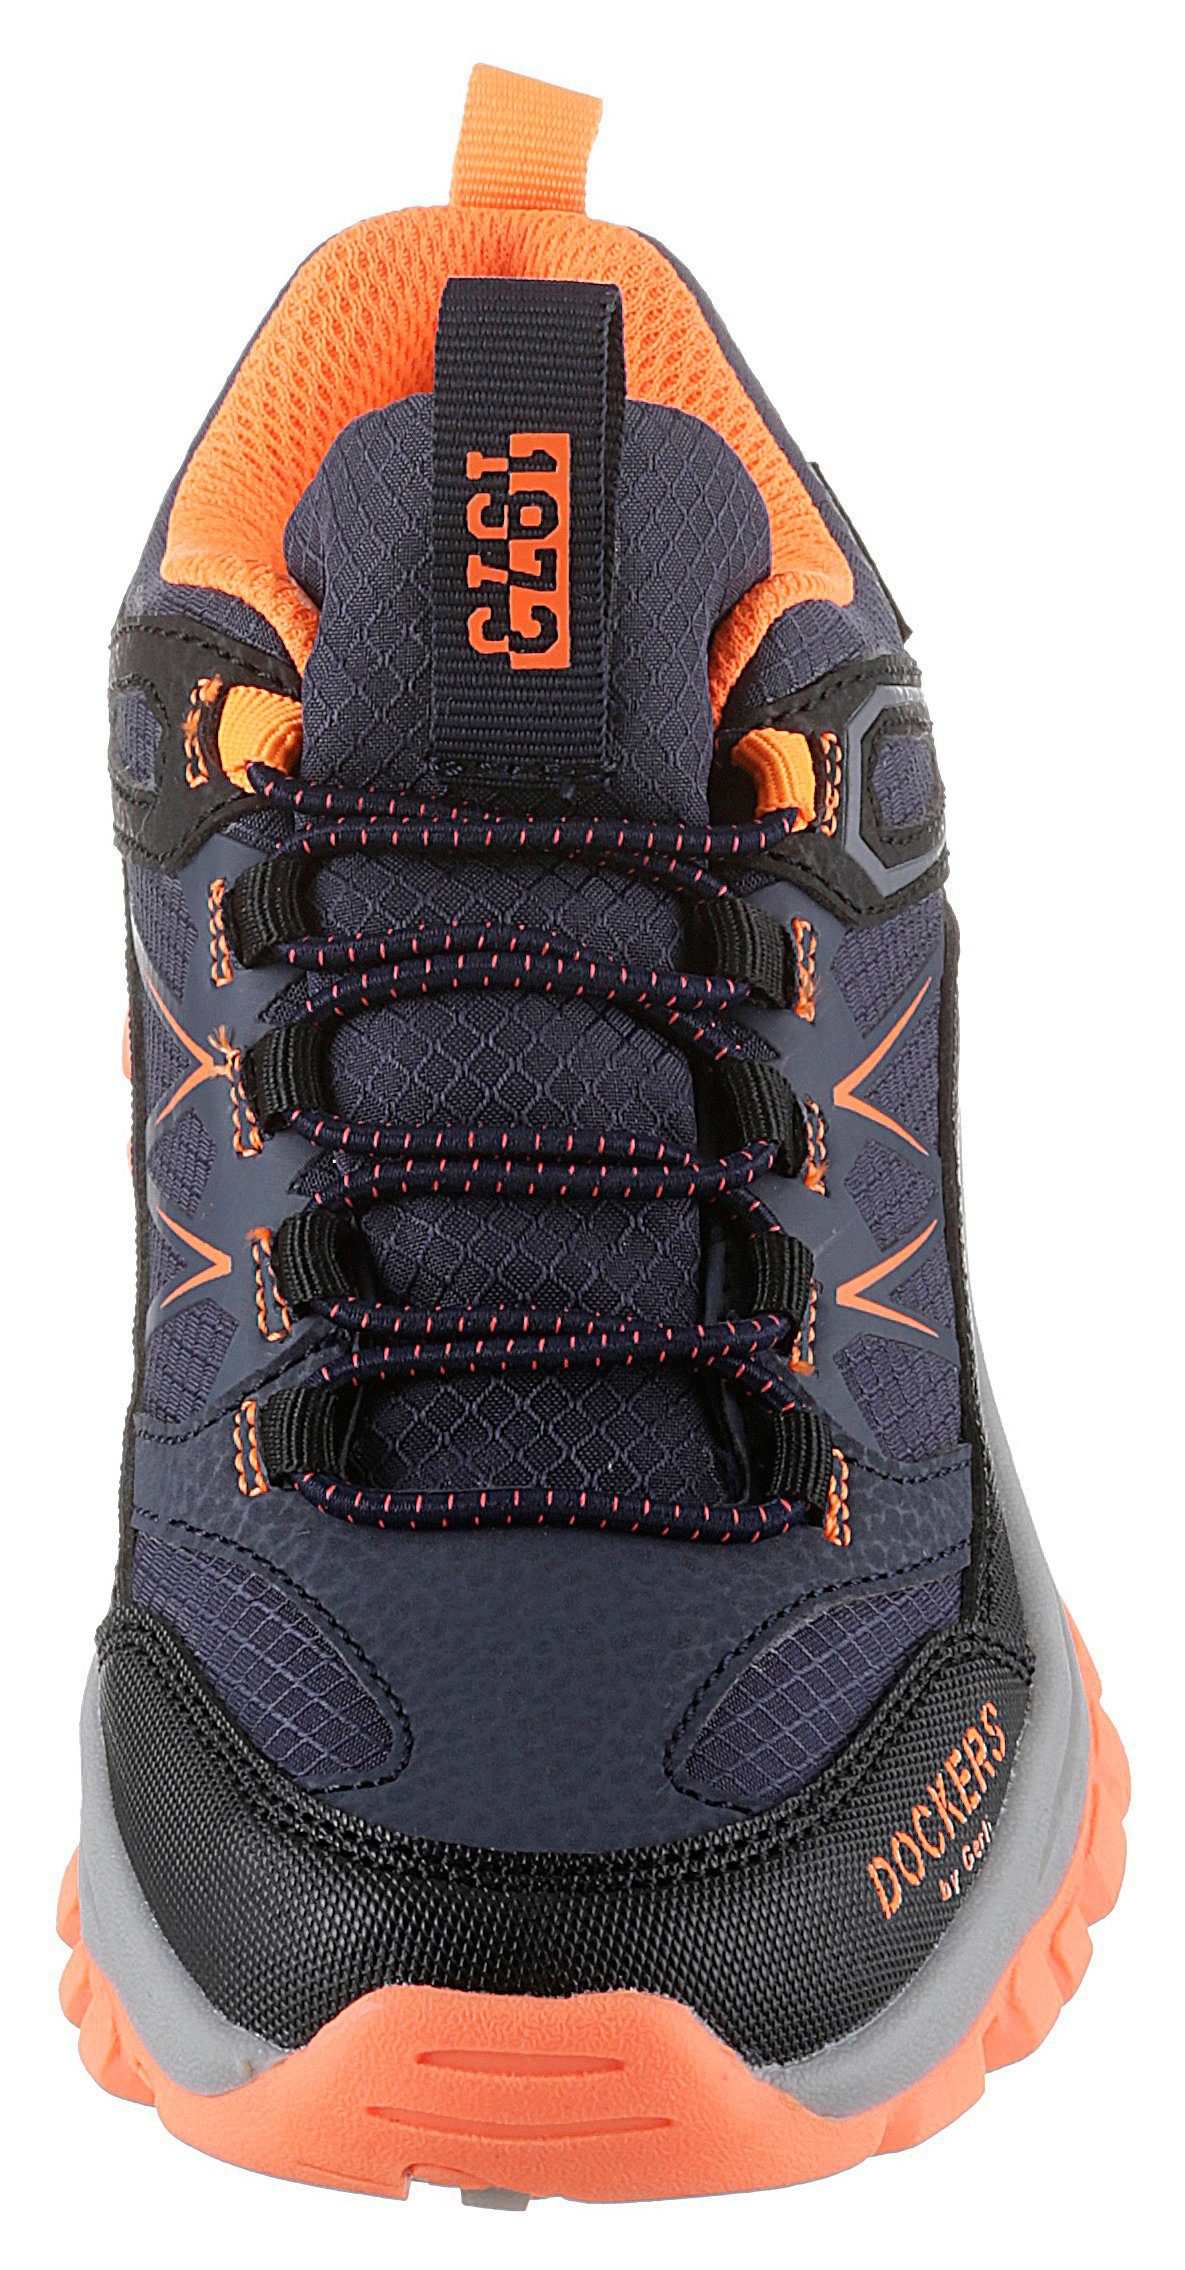 Gerli Sneaker Dockers by Slip-On mit Schnellverschluss dunkelblau-schwarz-orange